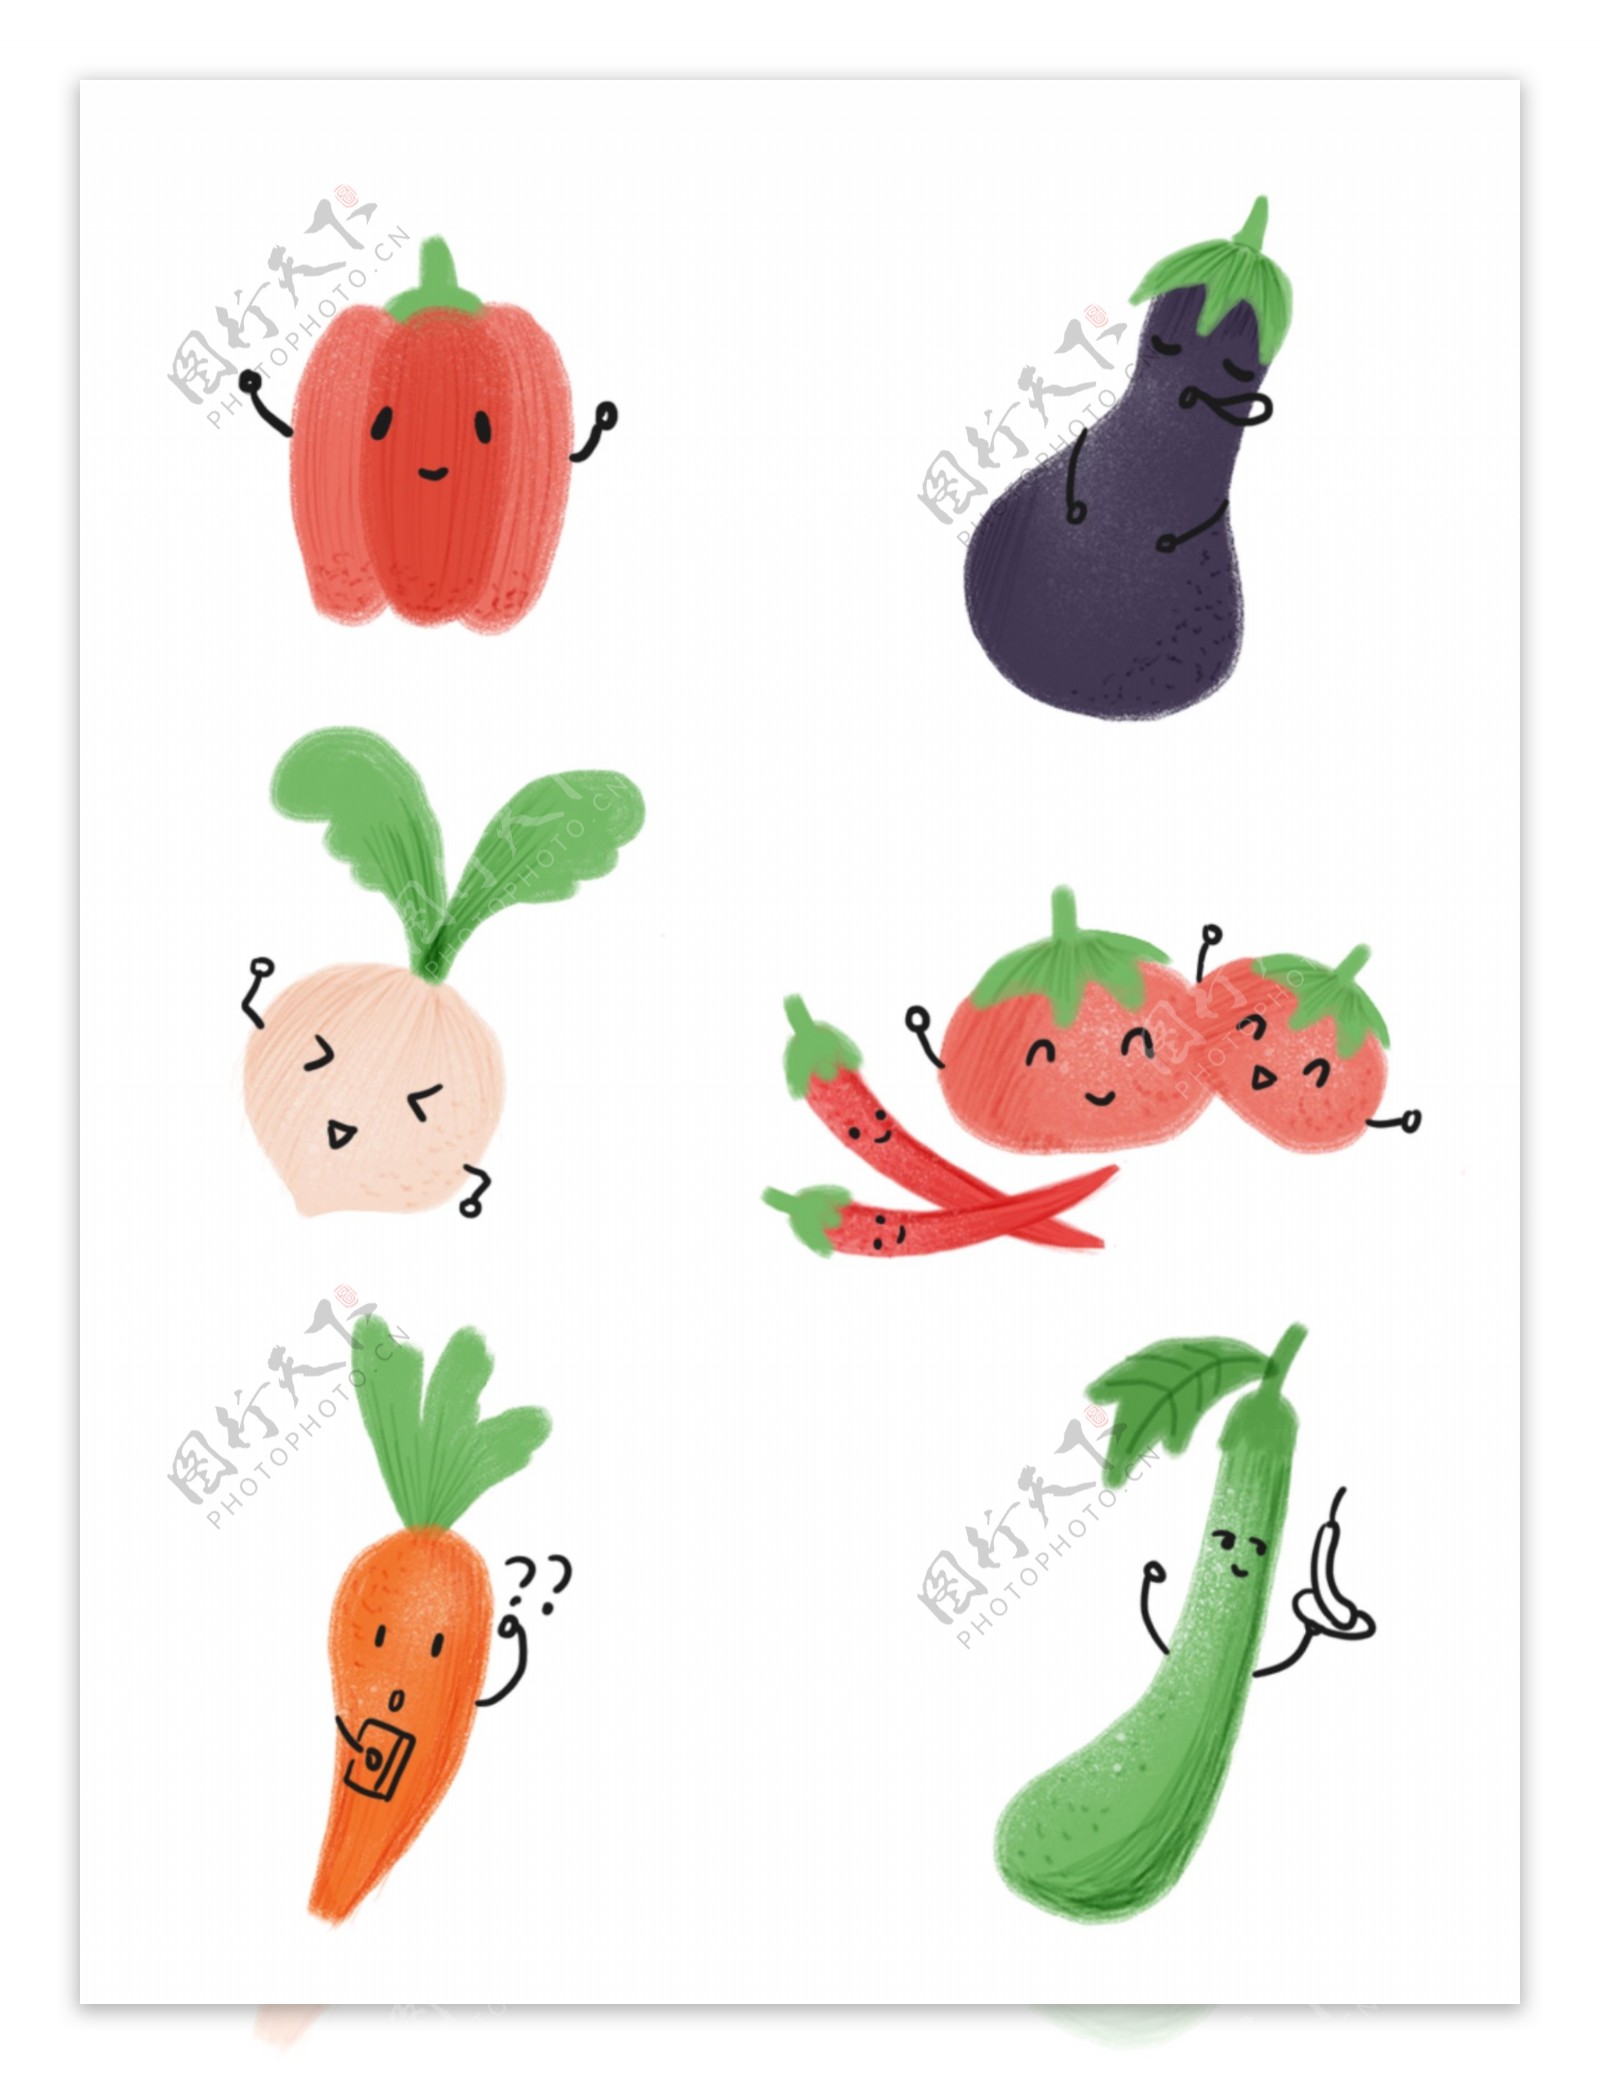 手绘可爱简约蔬菜装饰图案素材元素